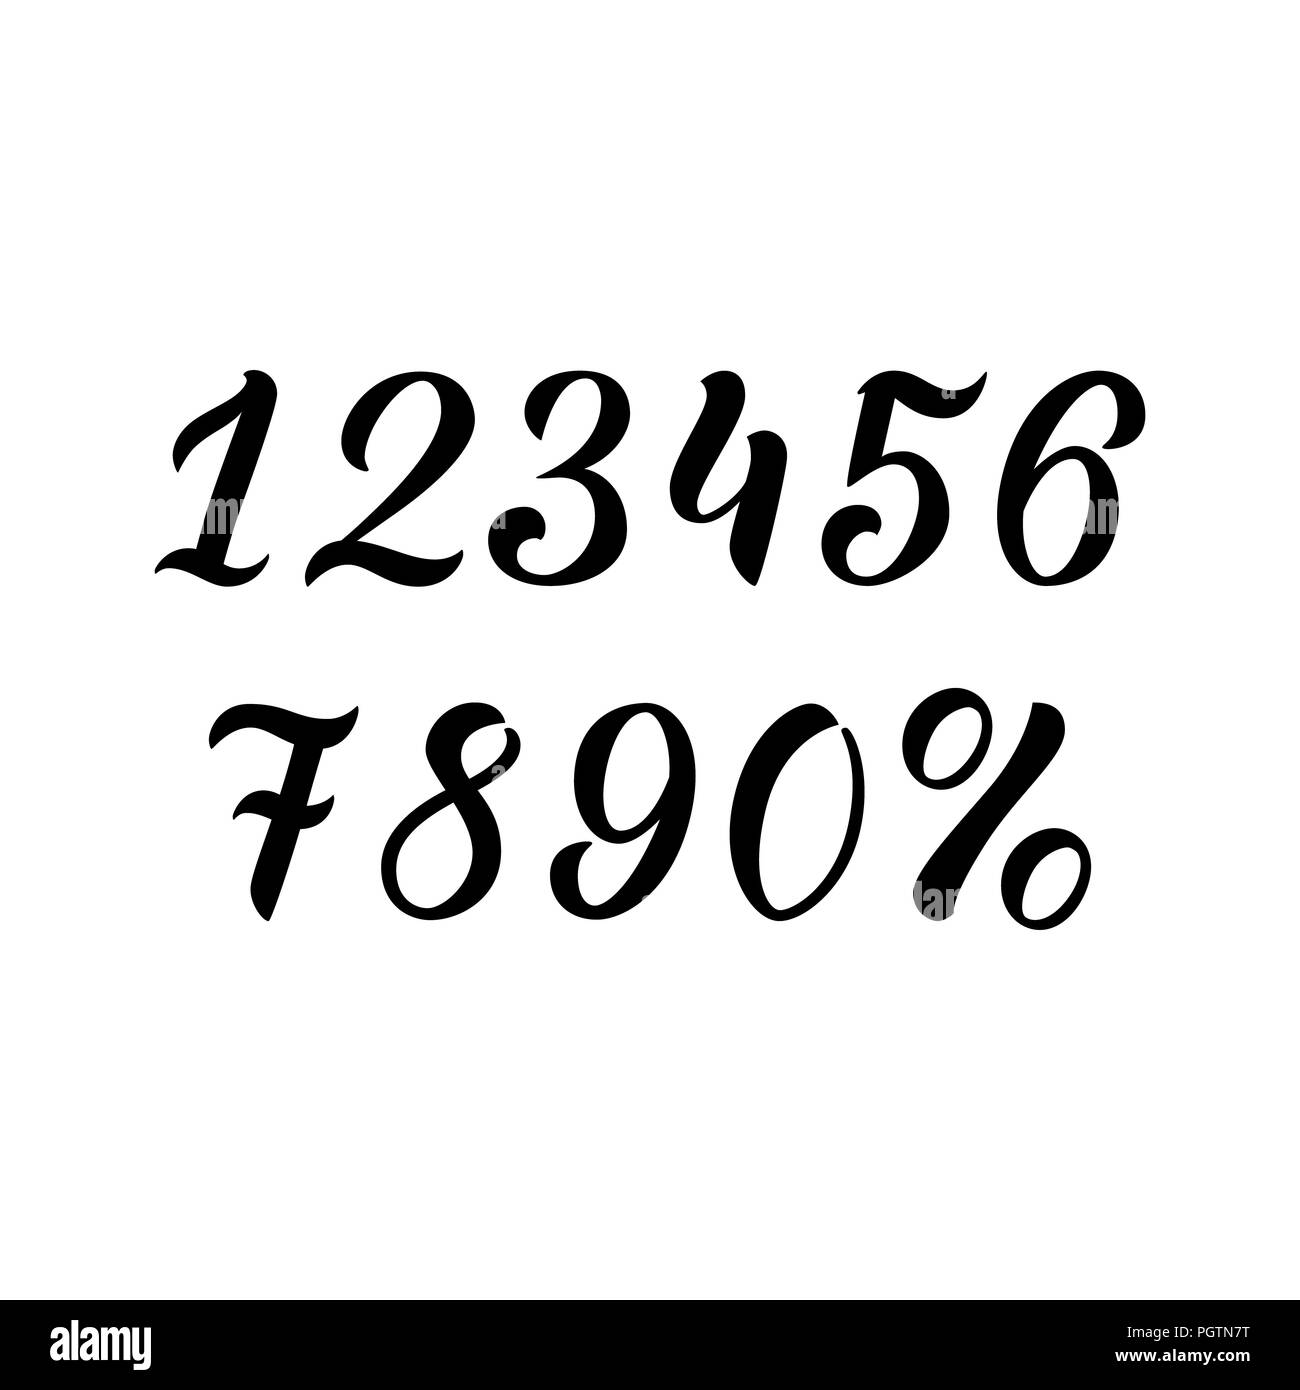 Number Designs Fonts